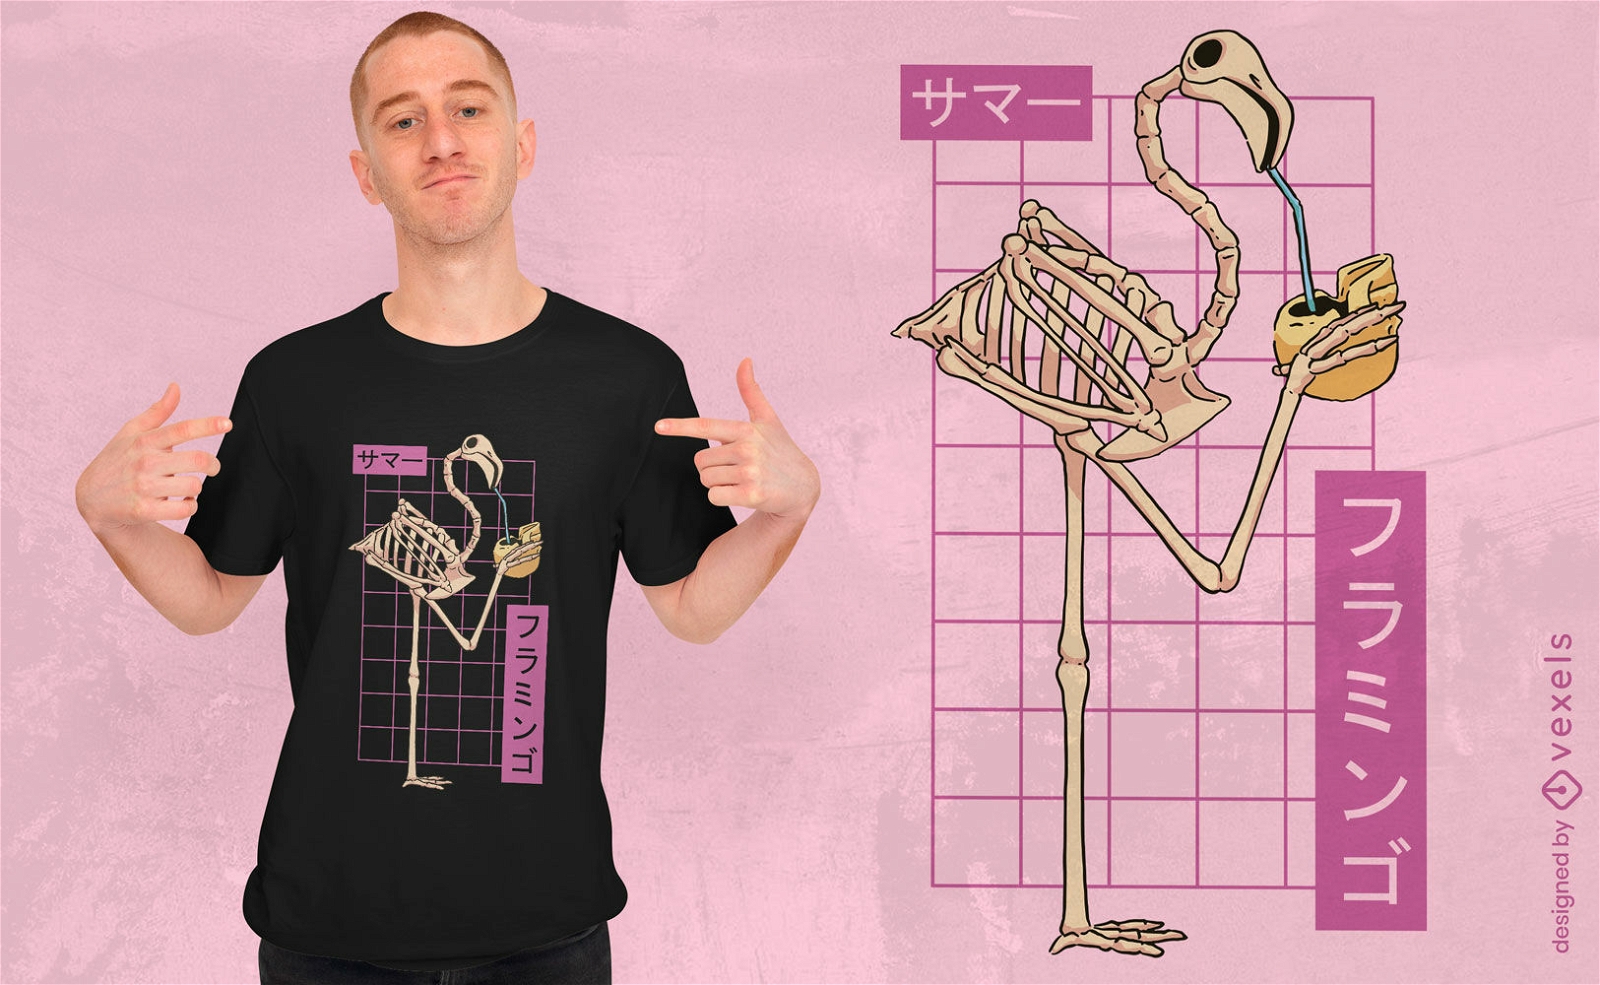 Flamingo-Skelett-T-Shirt-Design